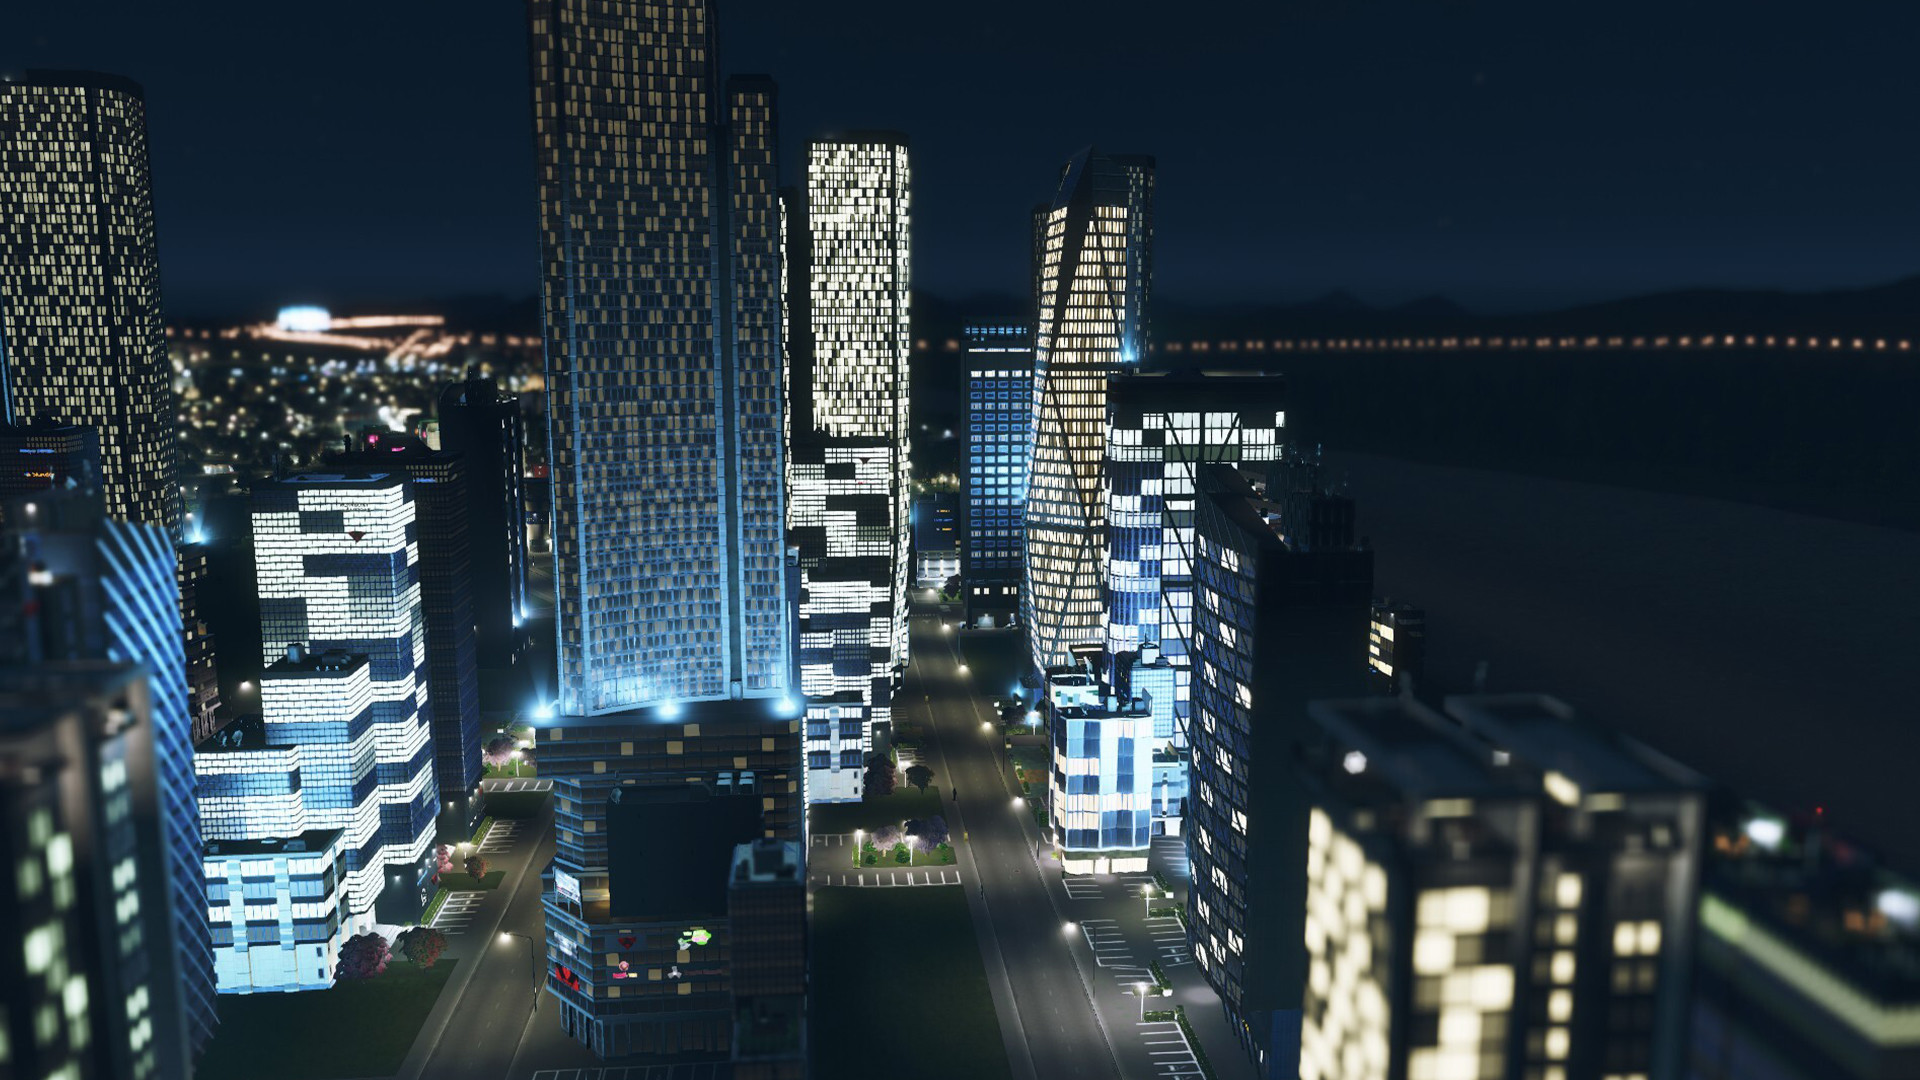 Cities Skyline kann nicht installiert werden? (PC, Computerspiele, Steam)